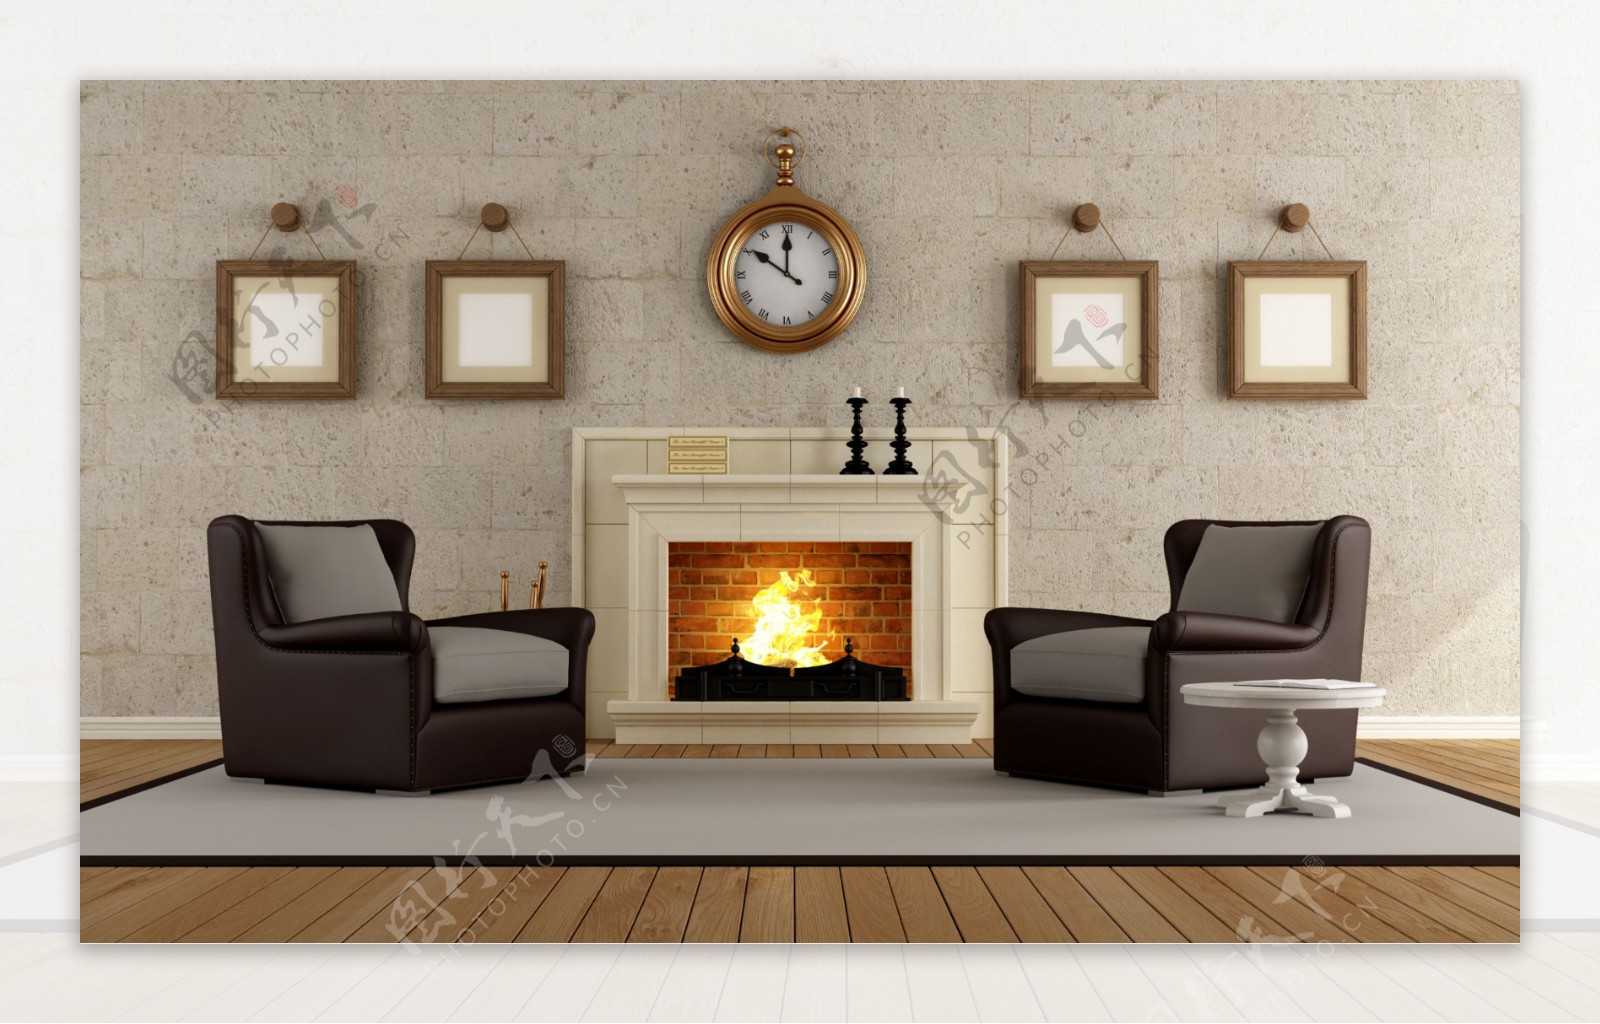 简约时尚客厅壁炉图片 – 设计本装修效果图